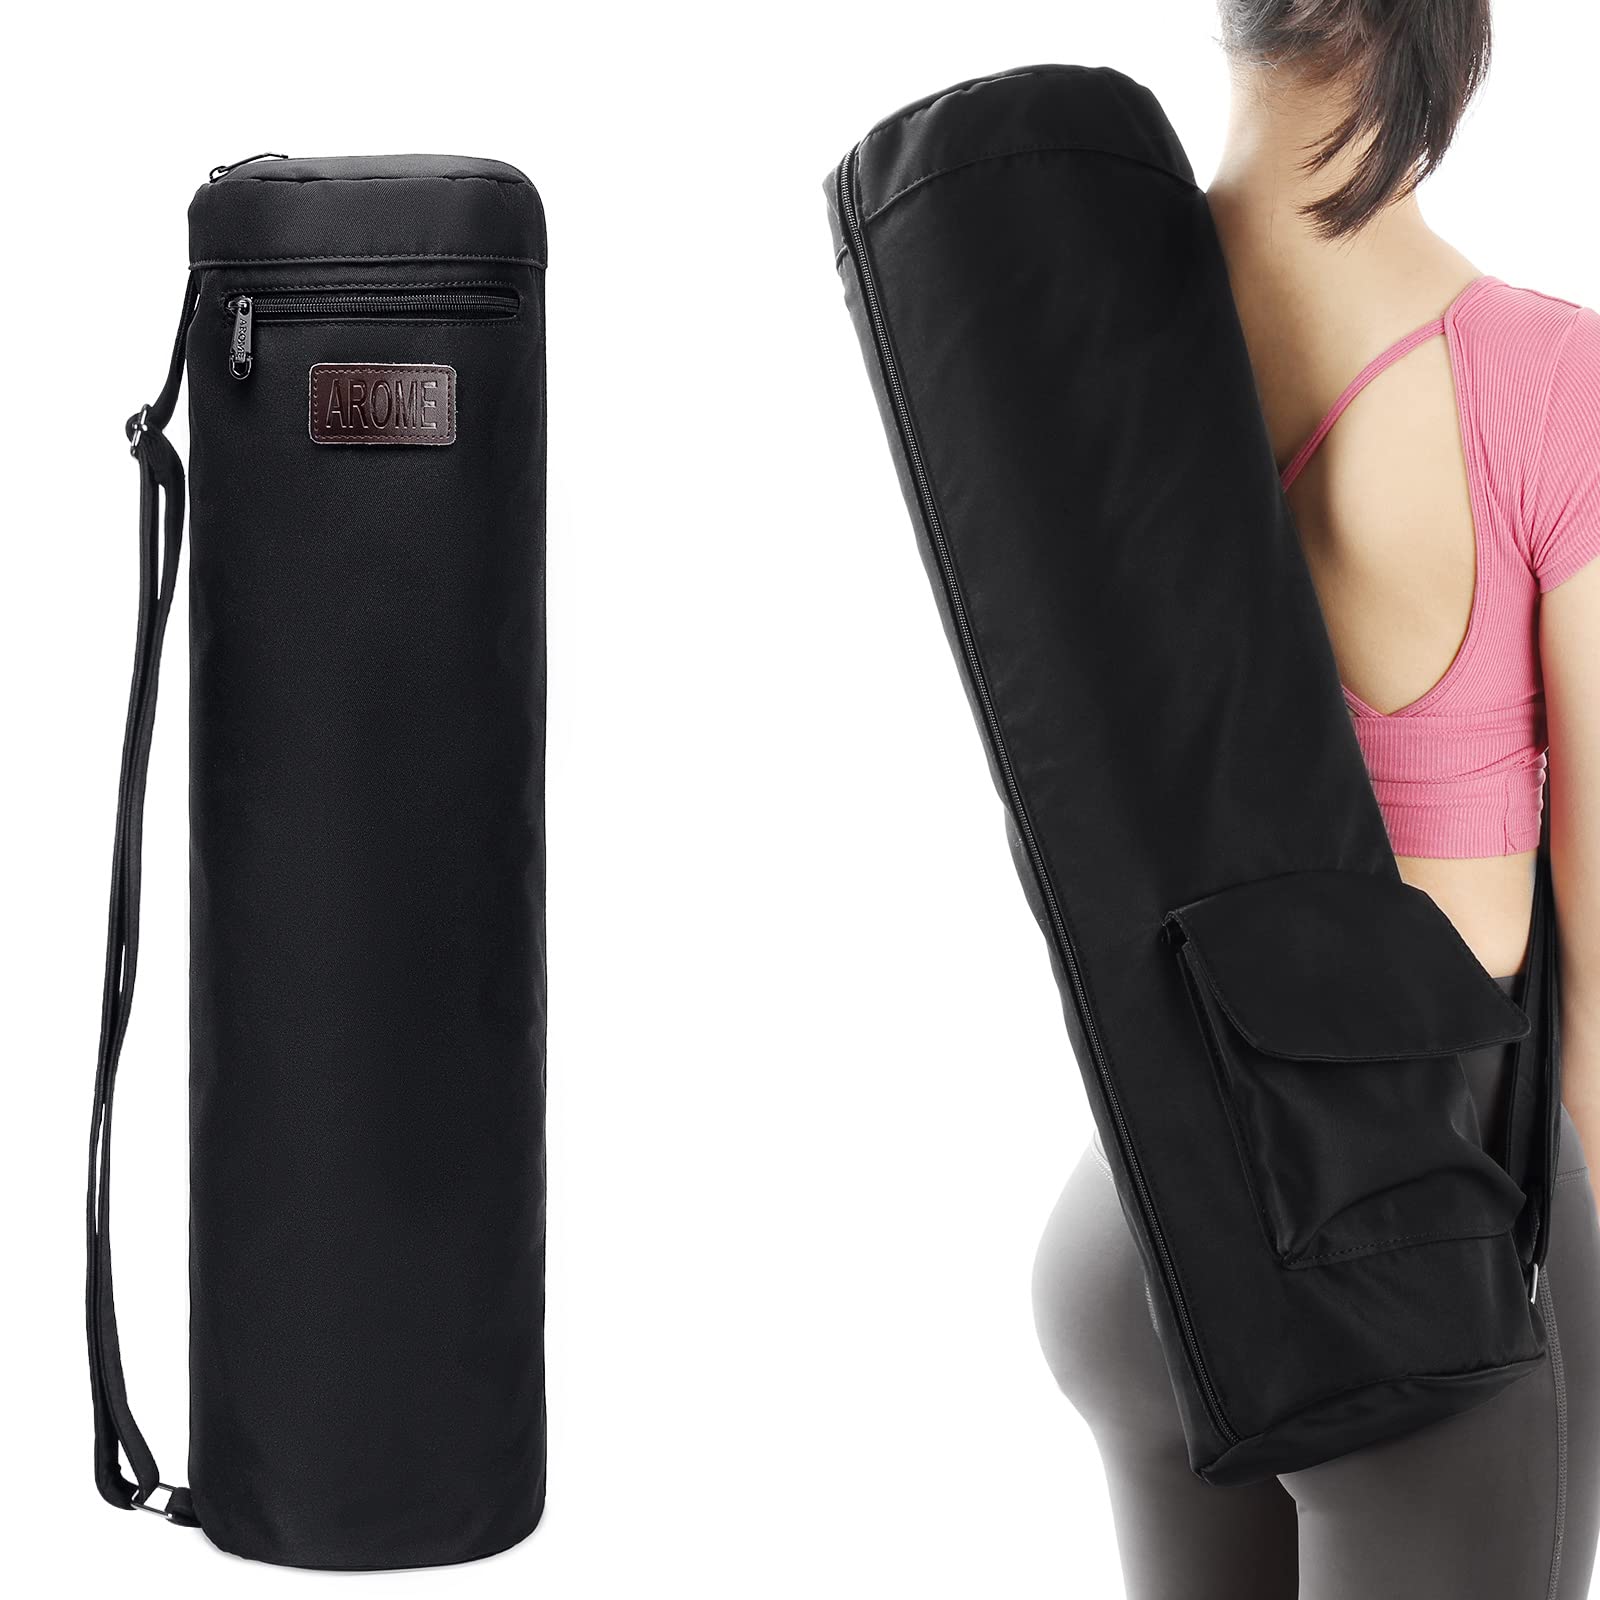 Yogwise Yoga Mat Bag Cover, Waterproof Polyester Material, Shoulder Strap,  Zip Closure, Yoga Bag for Women and Men, Exercise Mat Carry Bag